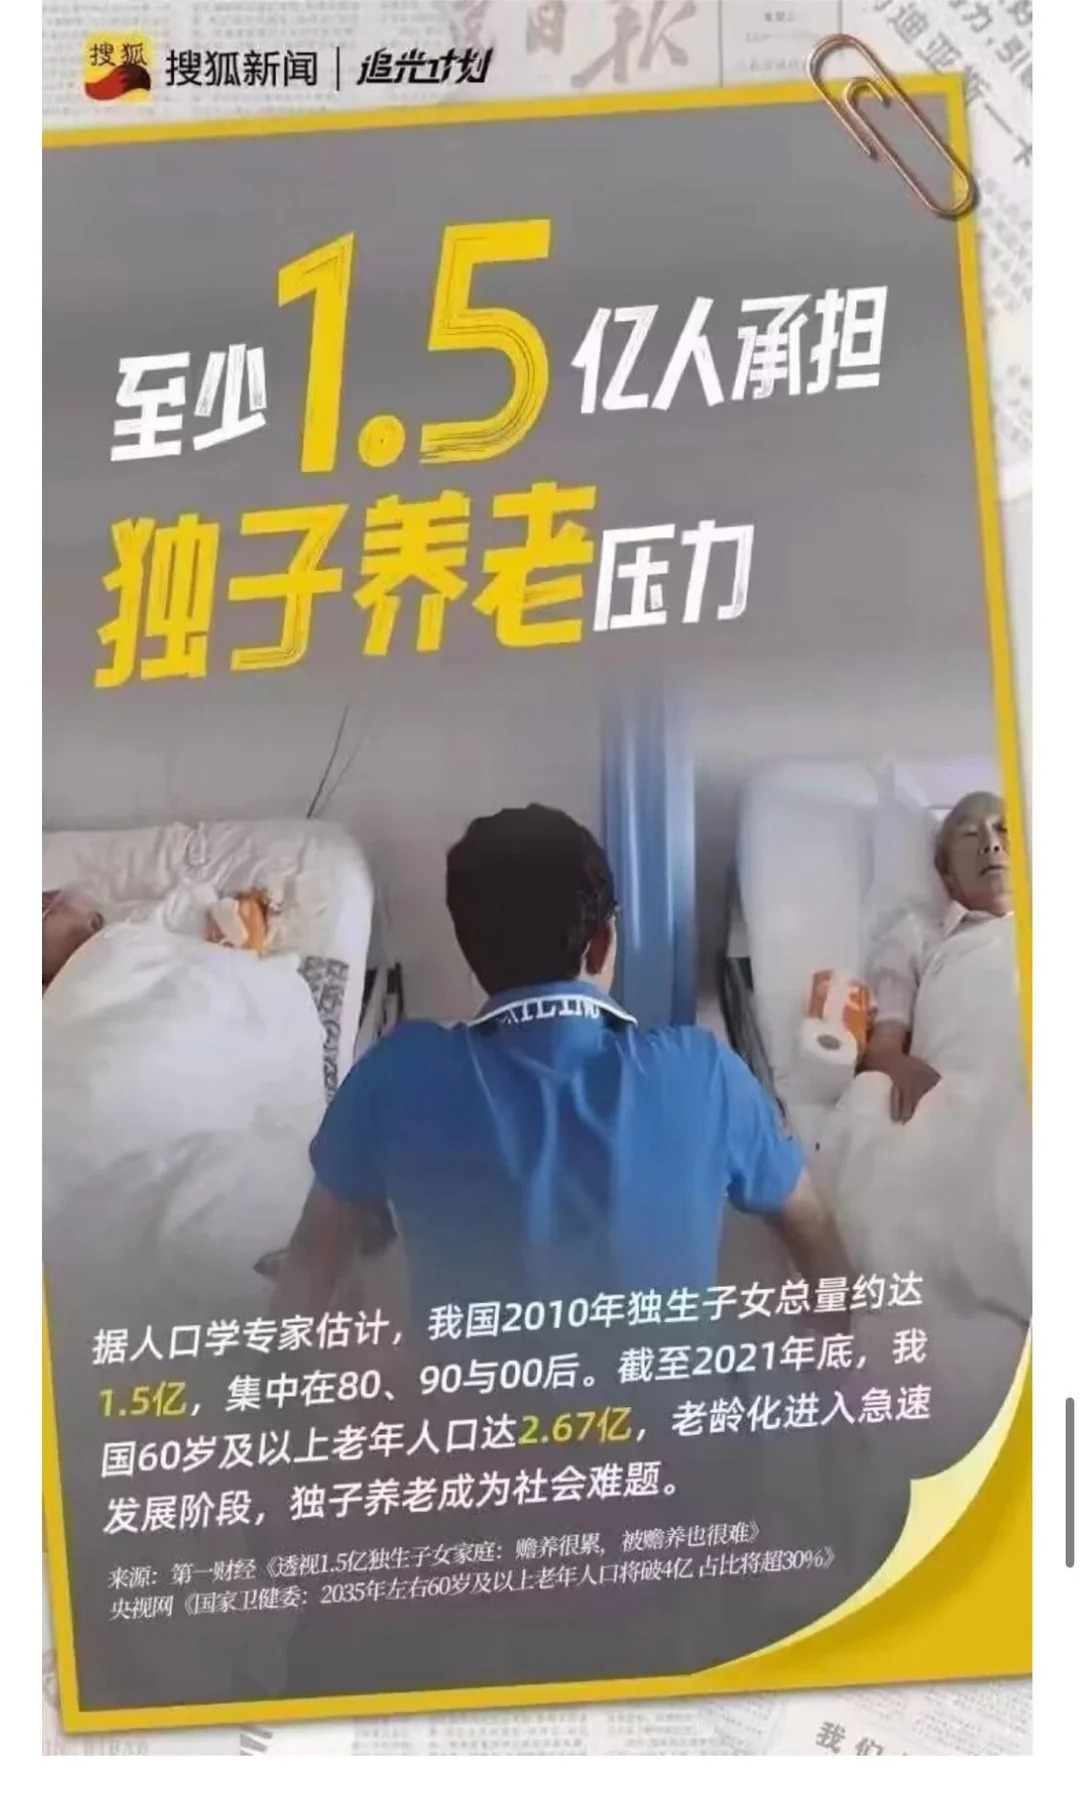 圖 搜狐引用官方數據連發9張海報 遭全網封殺